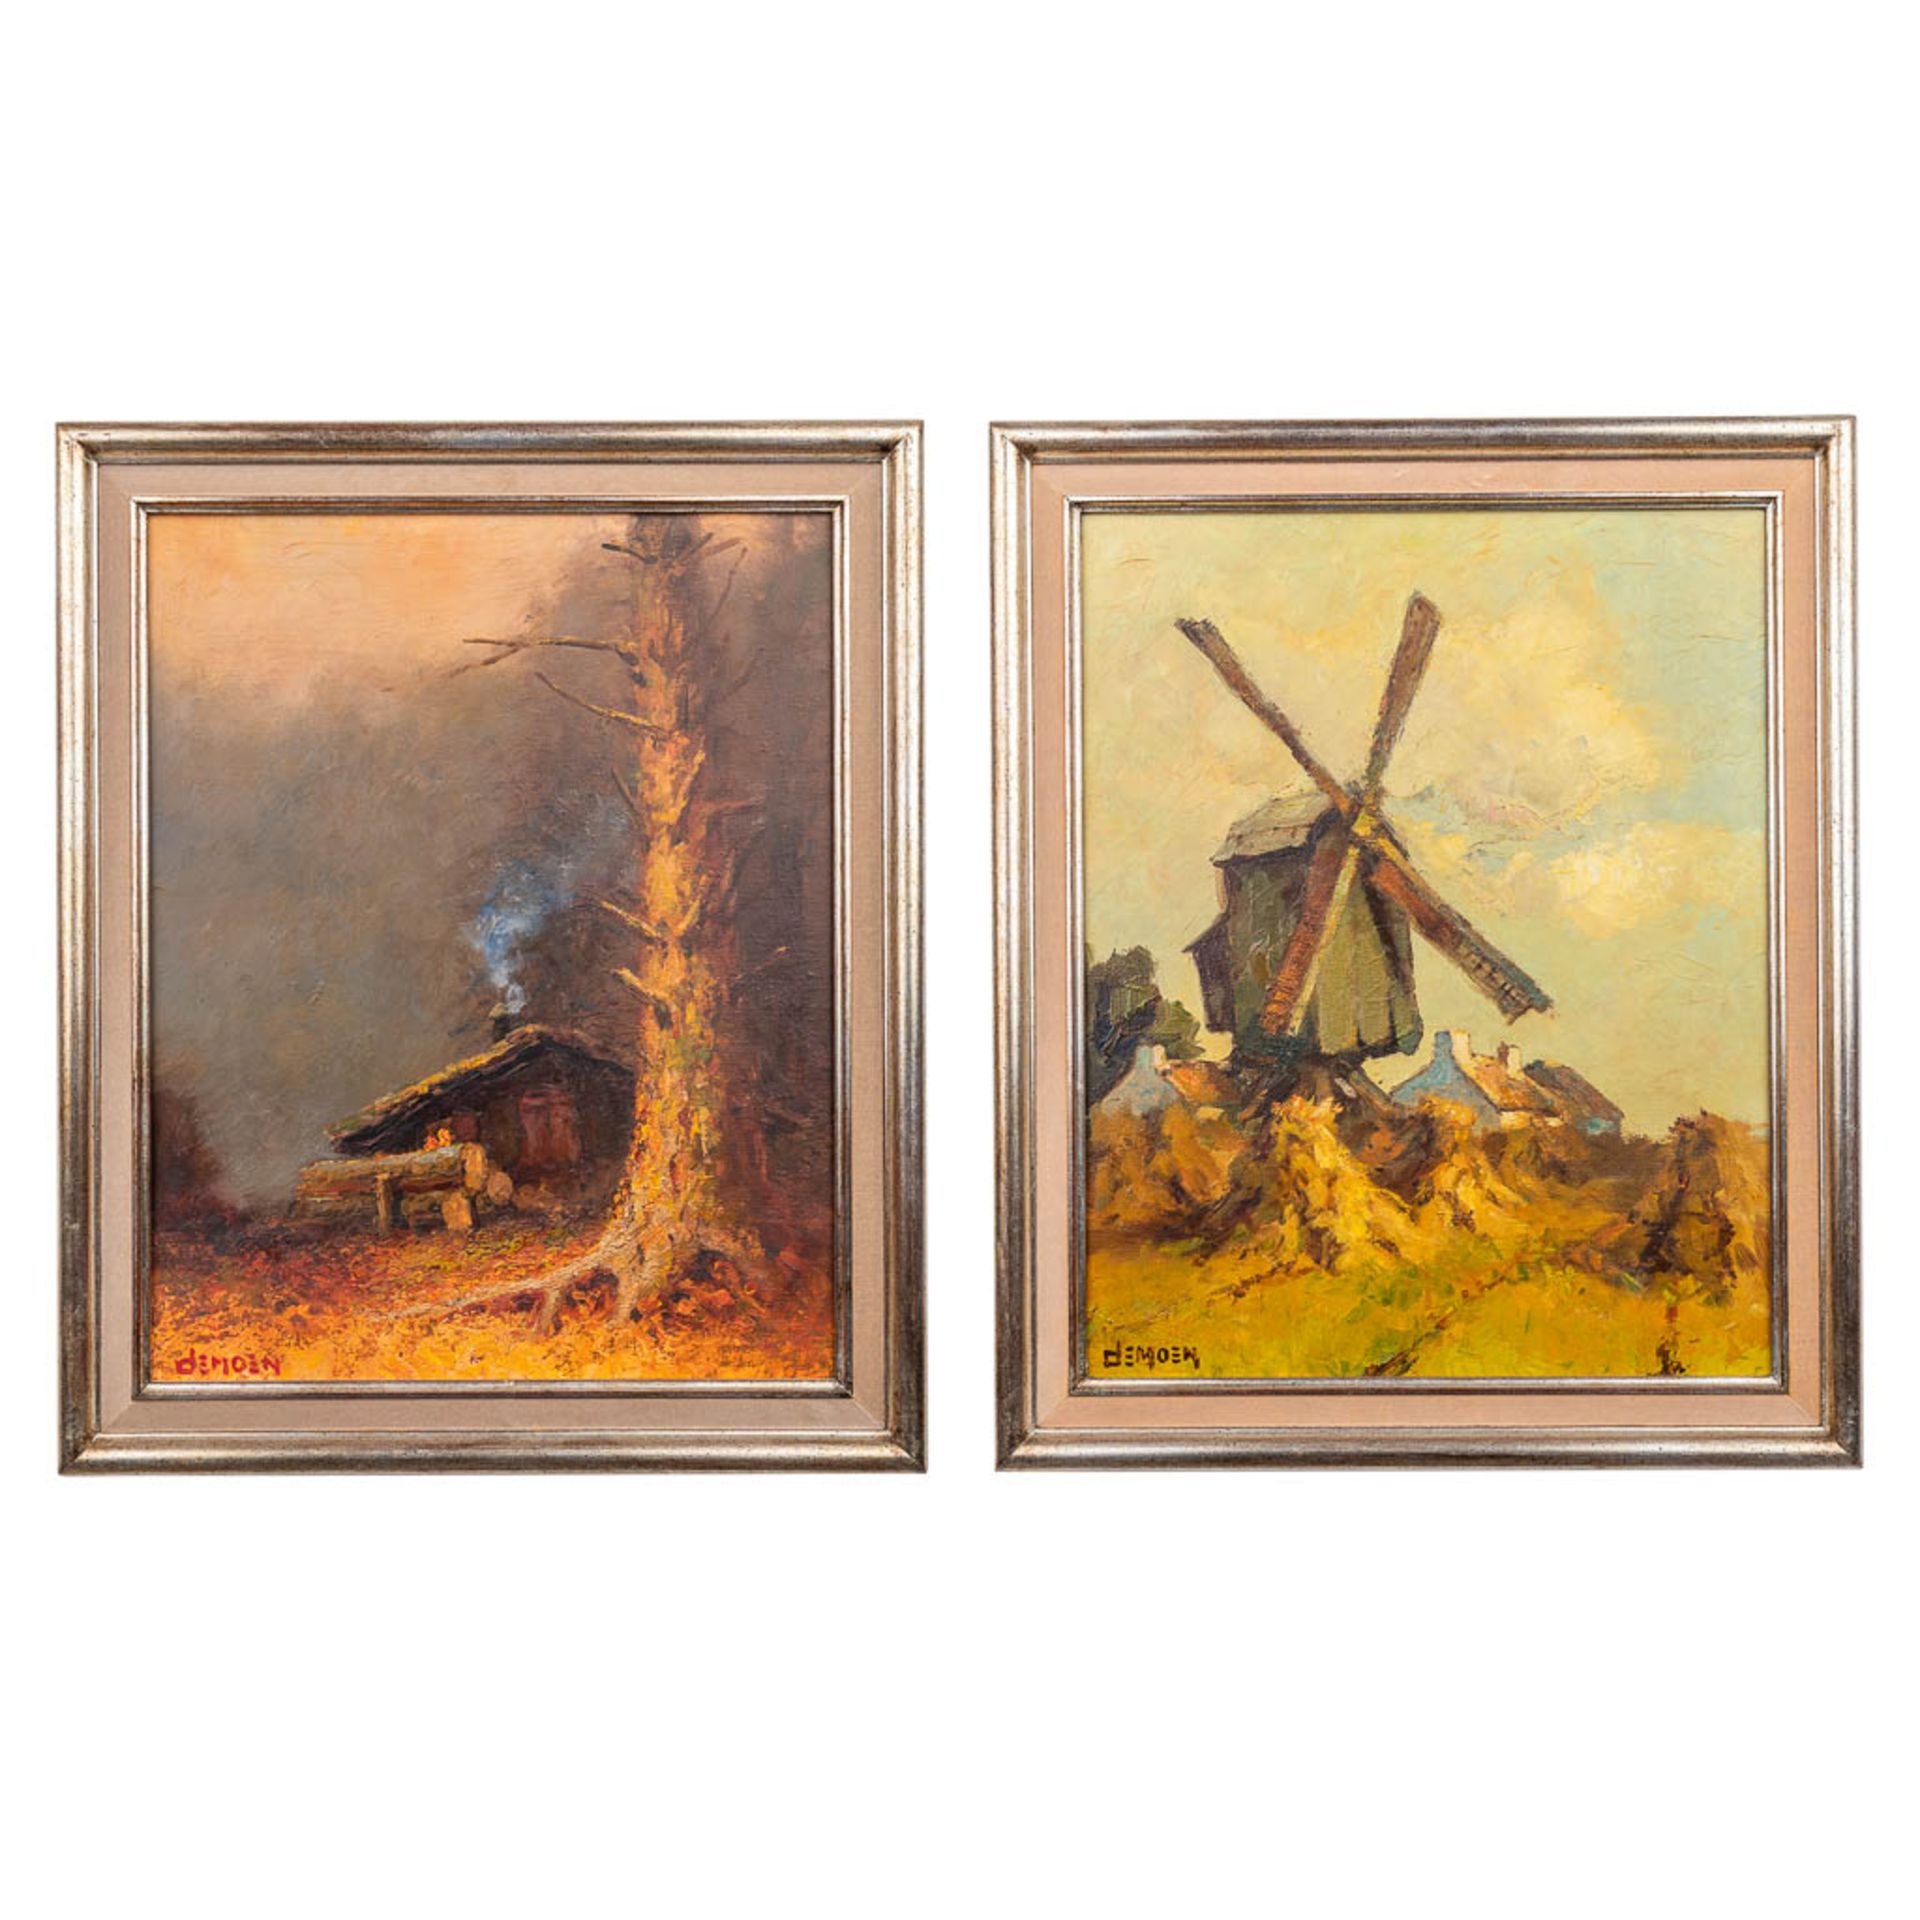 Albert DEMOEN (1916) 'Windmolen' &amp; 'De Blokhut' oil on canvas. (40 x 50cm)